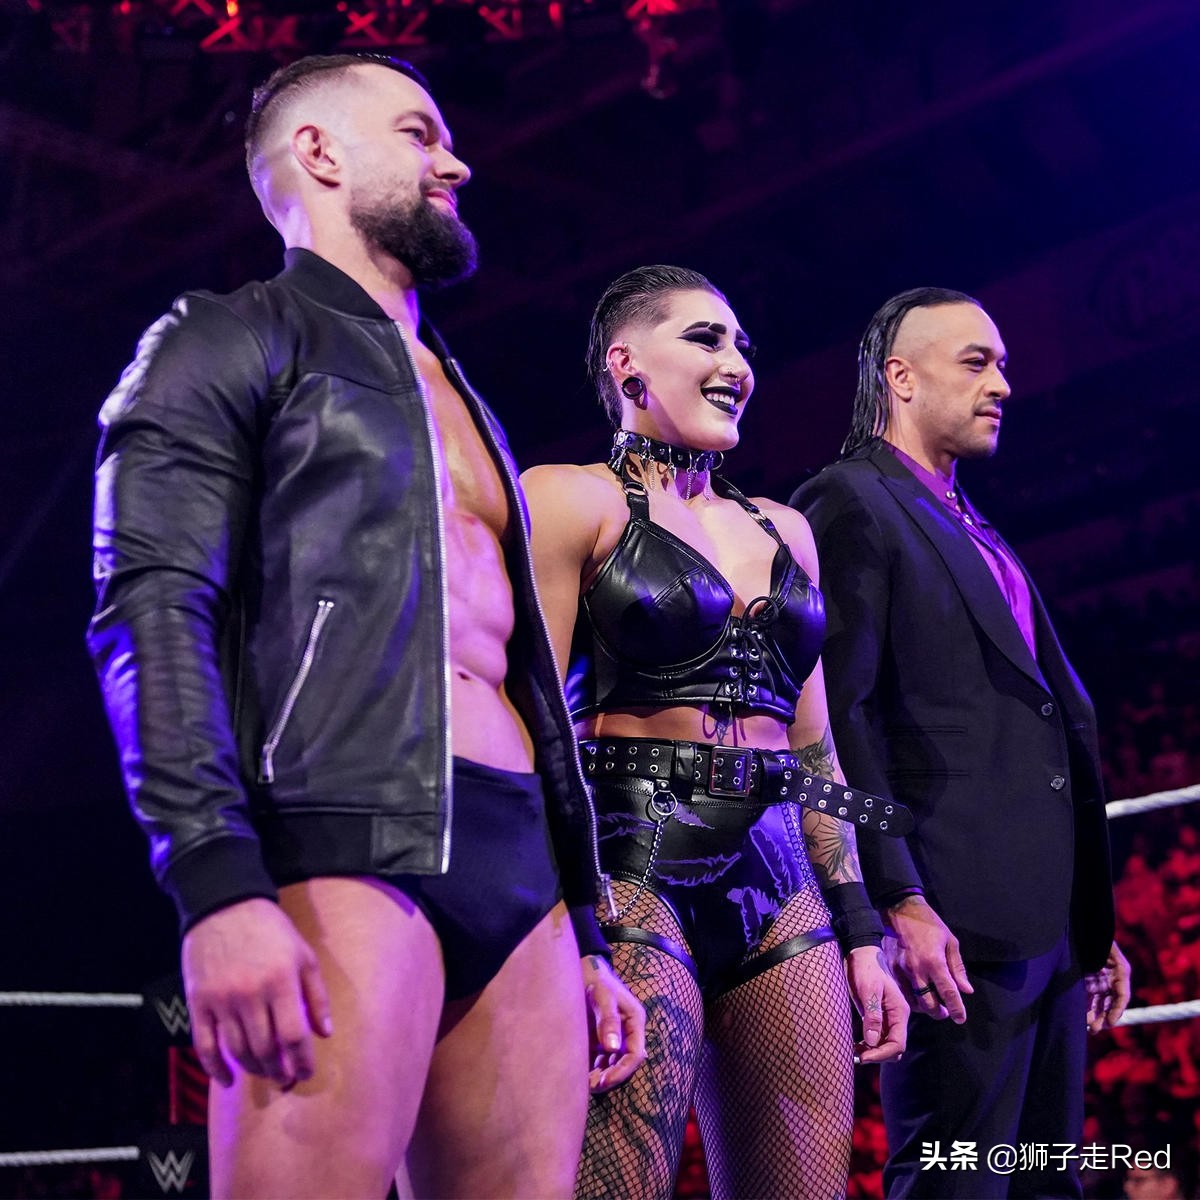 WWE第1515期RAW节目2022年6月6日赛况及精选照片集